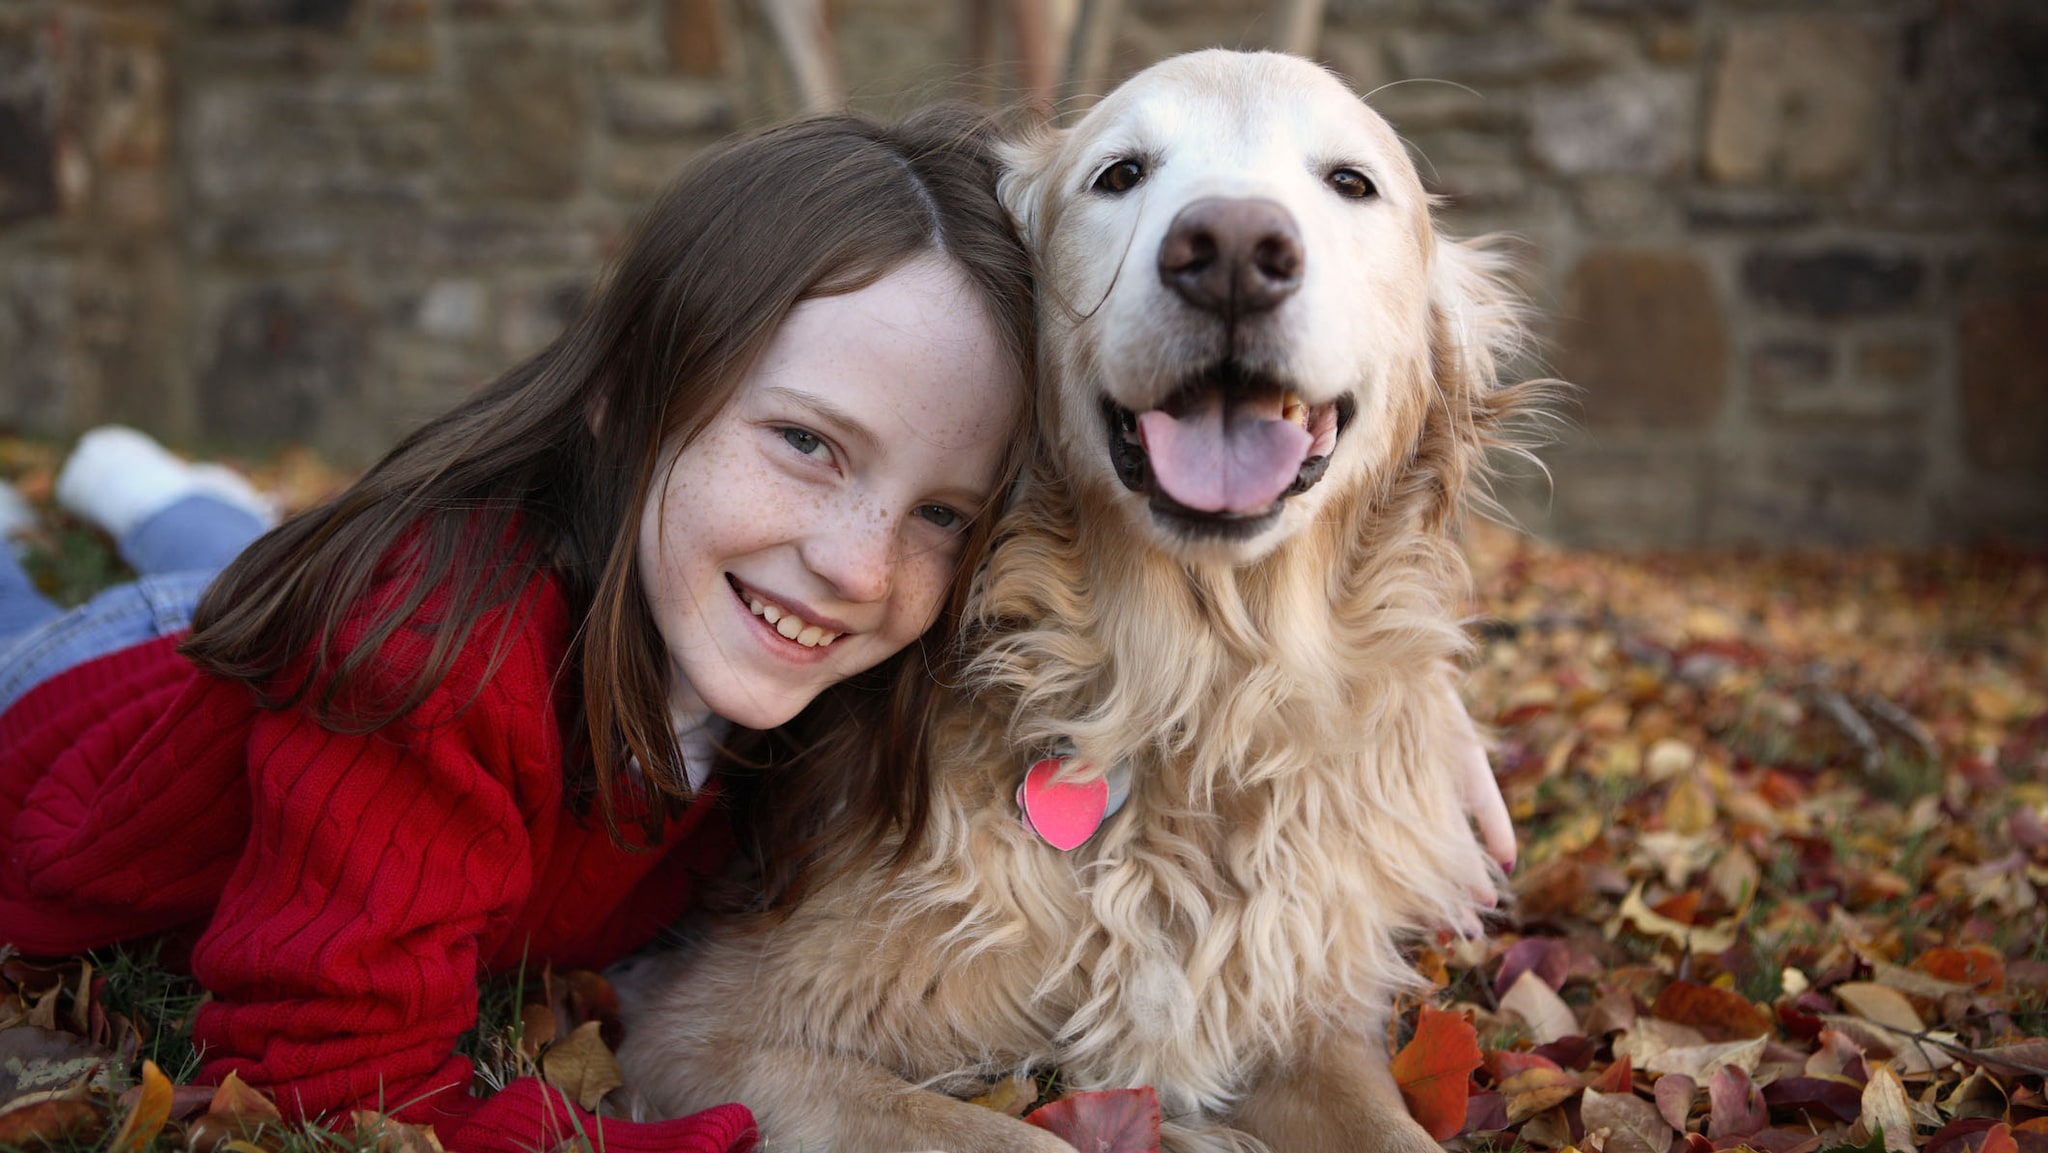 A young girl hugging a Golden Retriever dog.